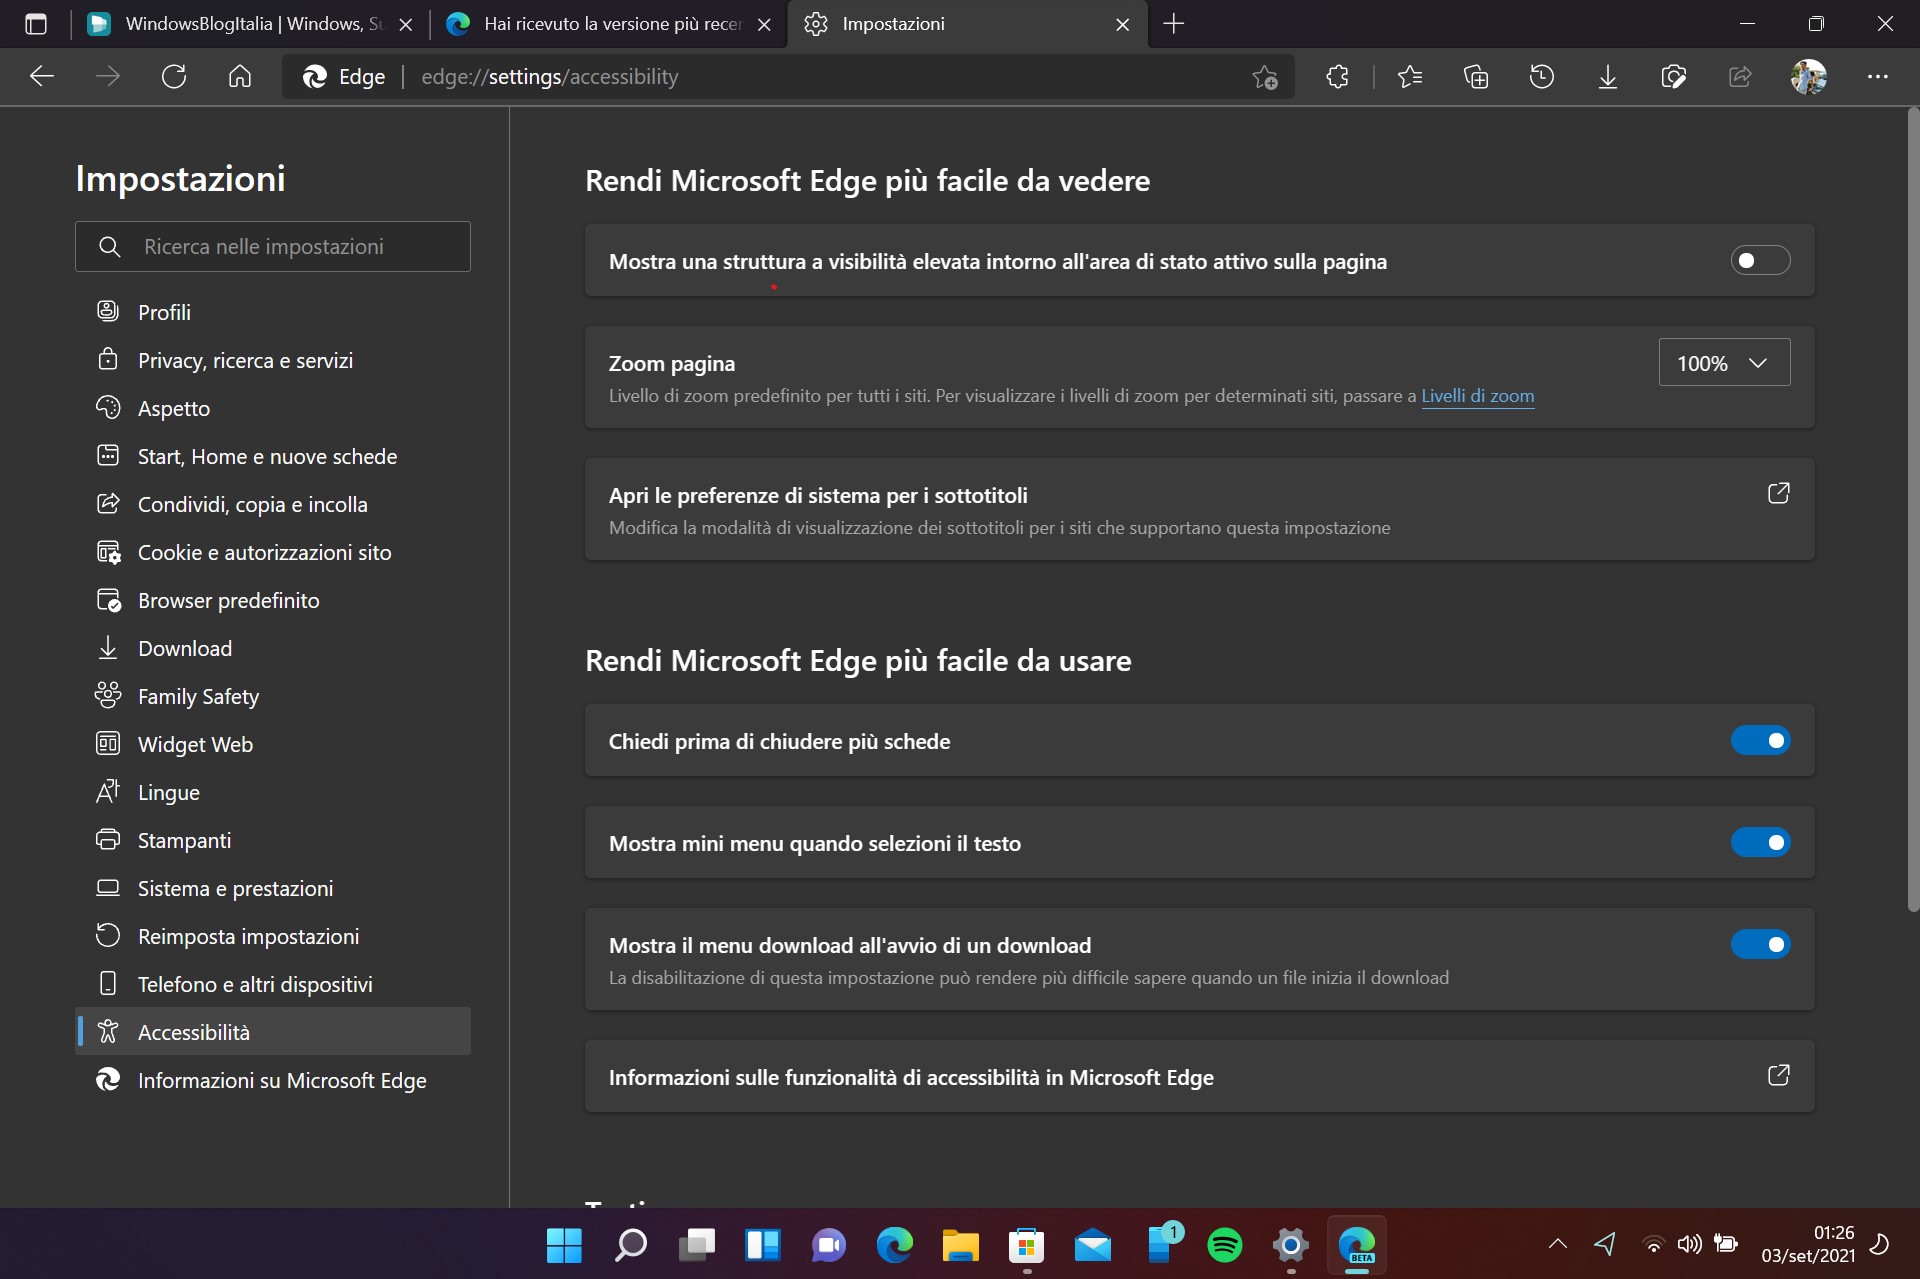 Microsoft Edge Beta - Nuova pagina Accessibilità